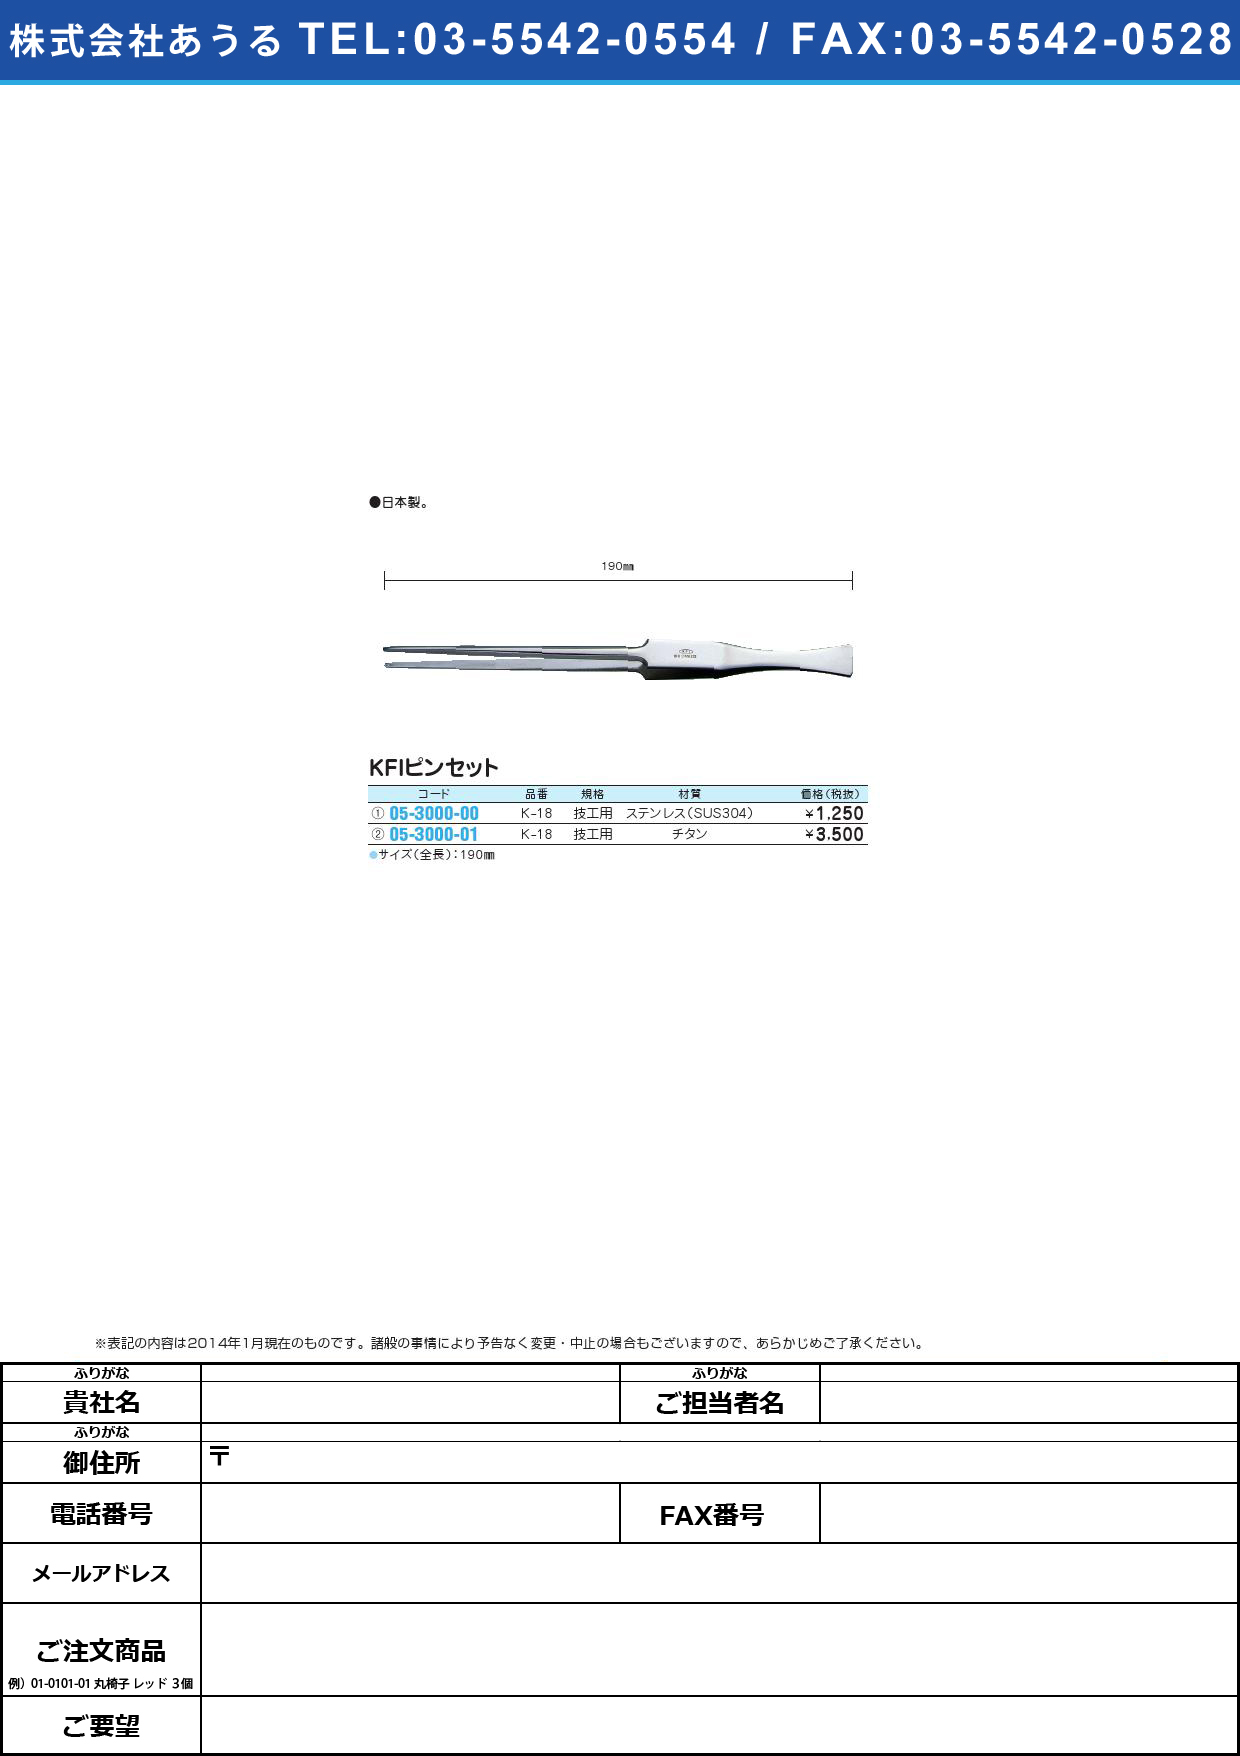 ＫＦＩピンセット 技工用 ﾋﾟﾝｾｯﾄ(05-3000-01)K-18 (ﾁﾀﾝ) 190MM